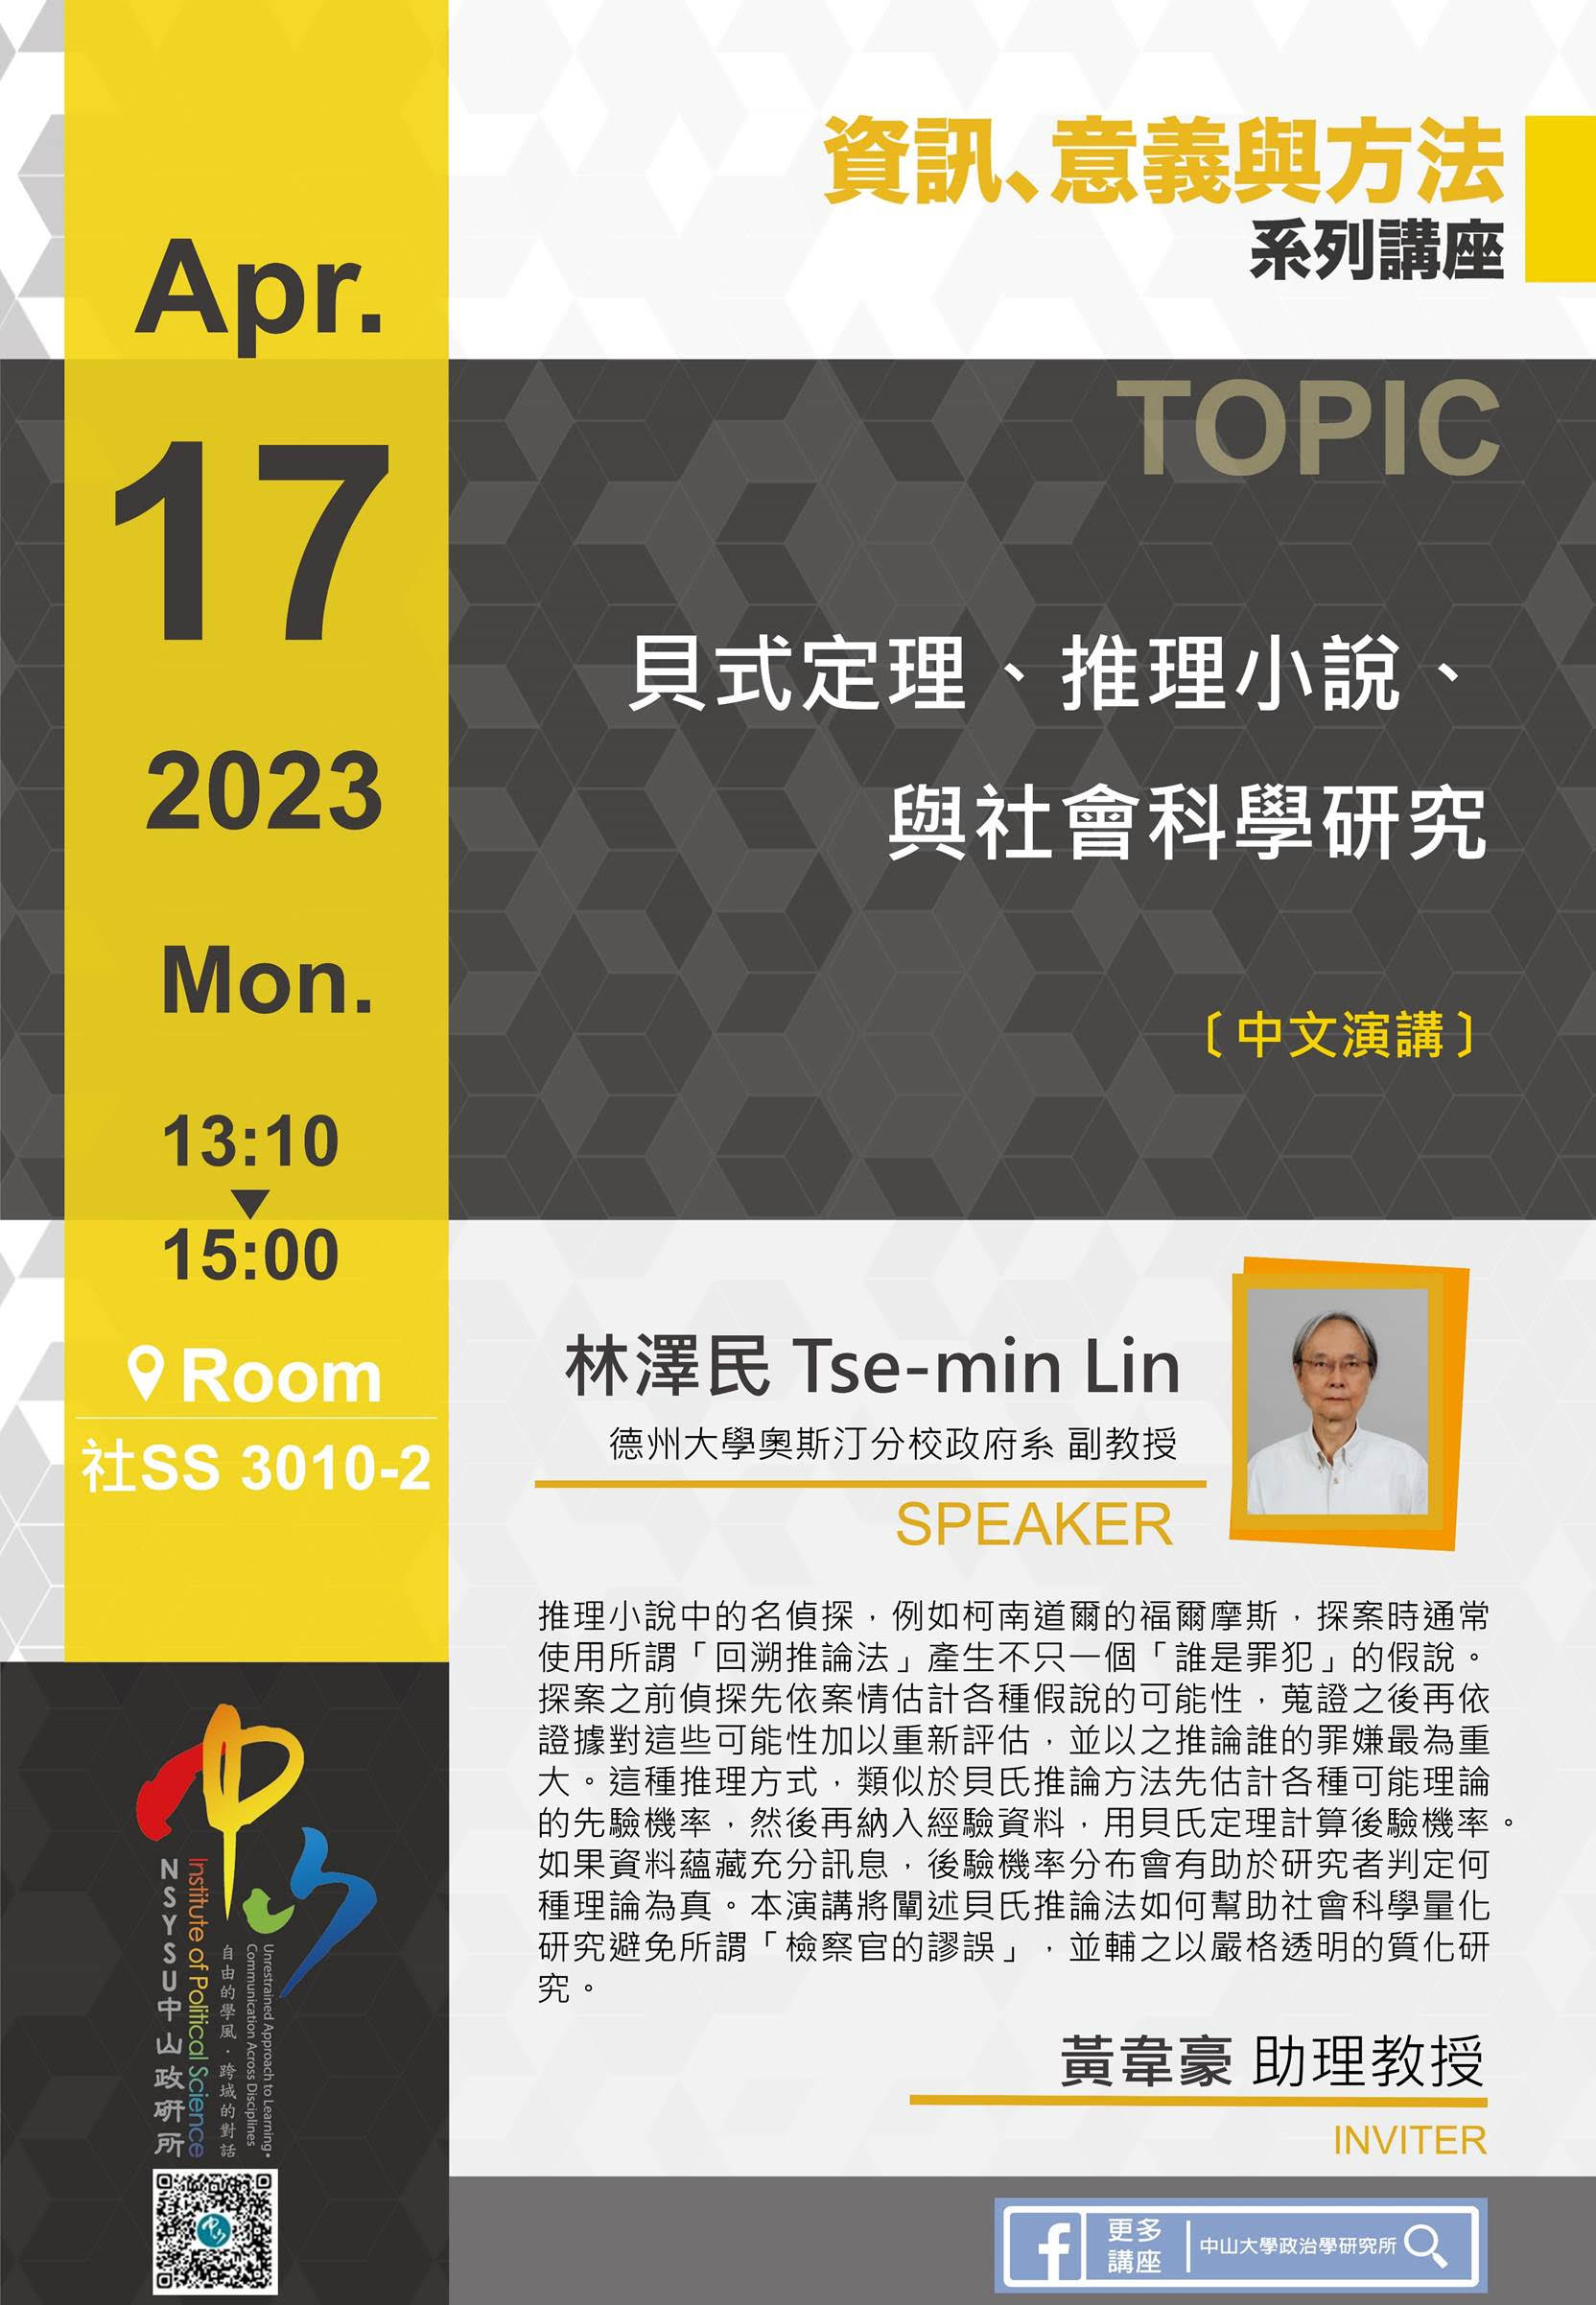 林澤民 Tse-min Lin：貝式定理、推理小說、與社會科學研究